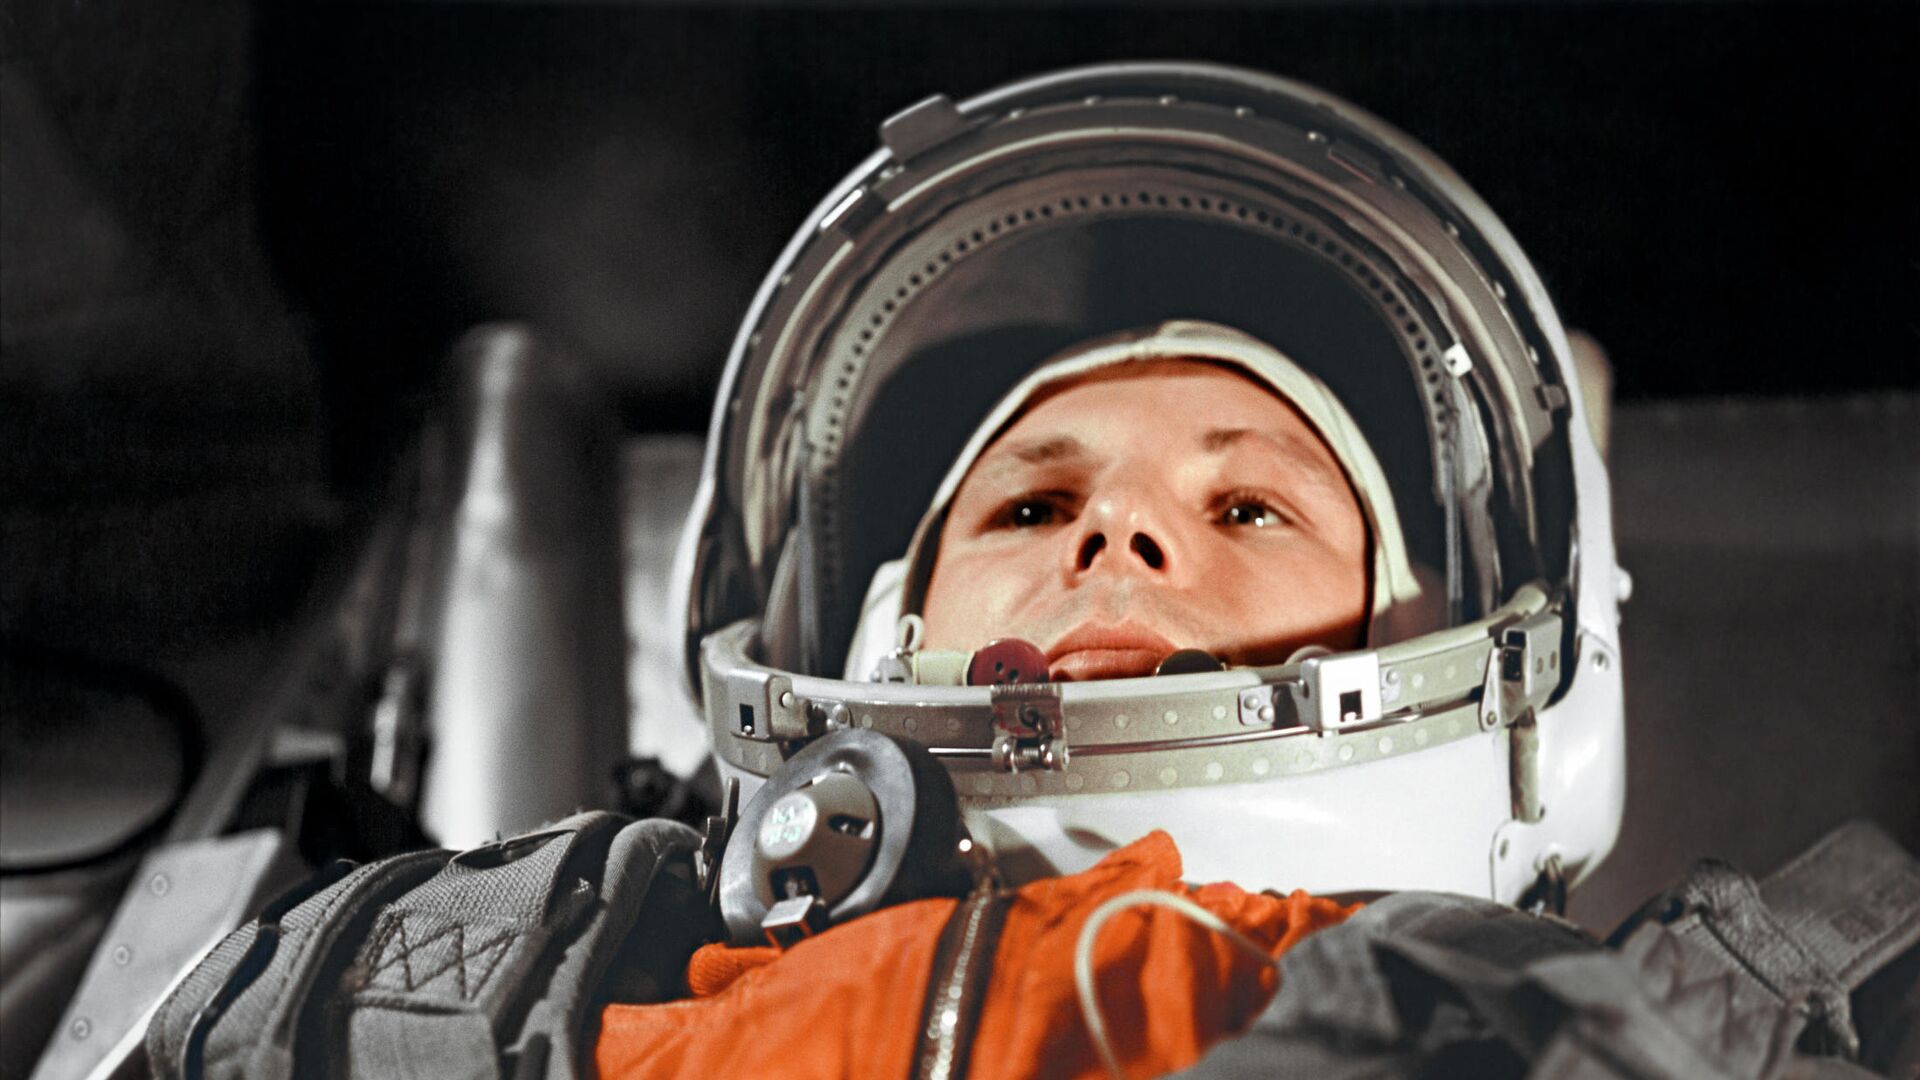 Юрий Гагарин в кабине космического корабля “Восток” перед полётом в космос 12 апреля 1961 года - РИА Новости, 1920, 01.04.2021